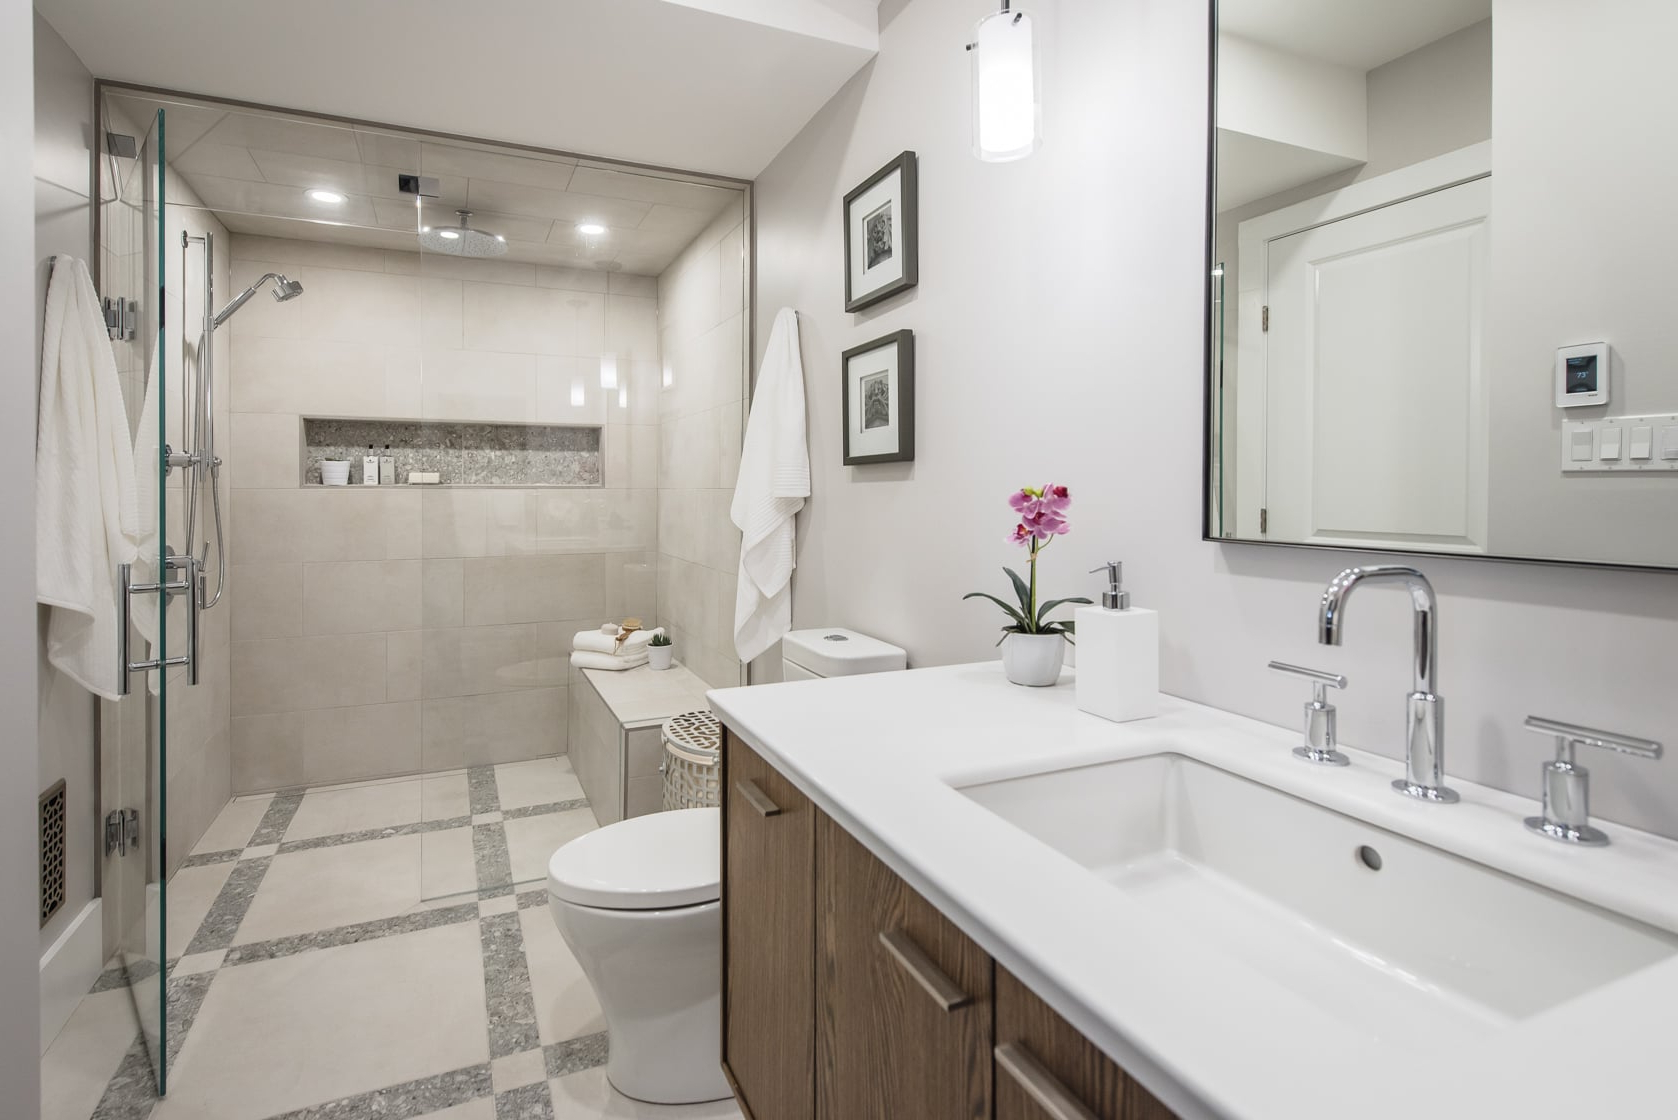 Luxurious Bathroom Updates Popsugar Home